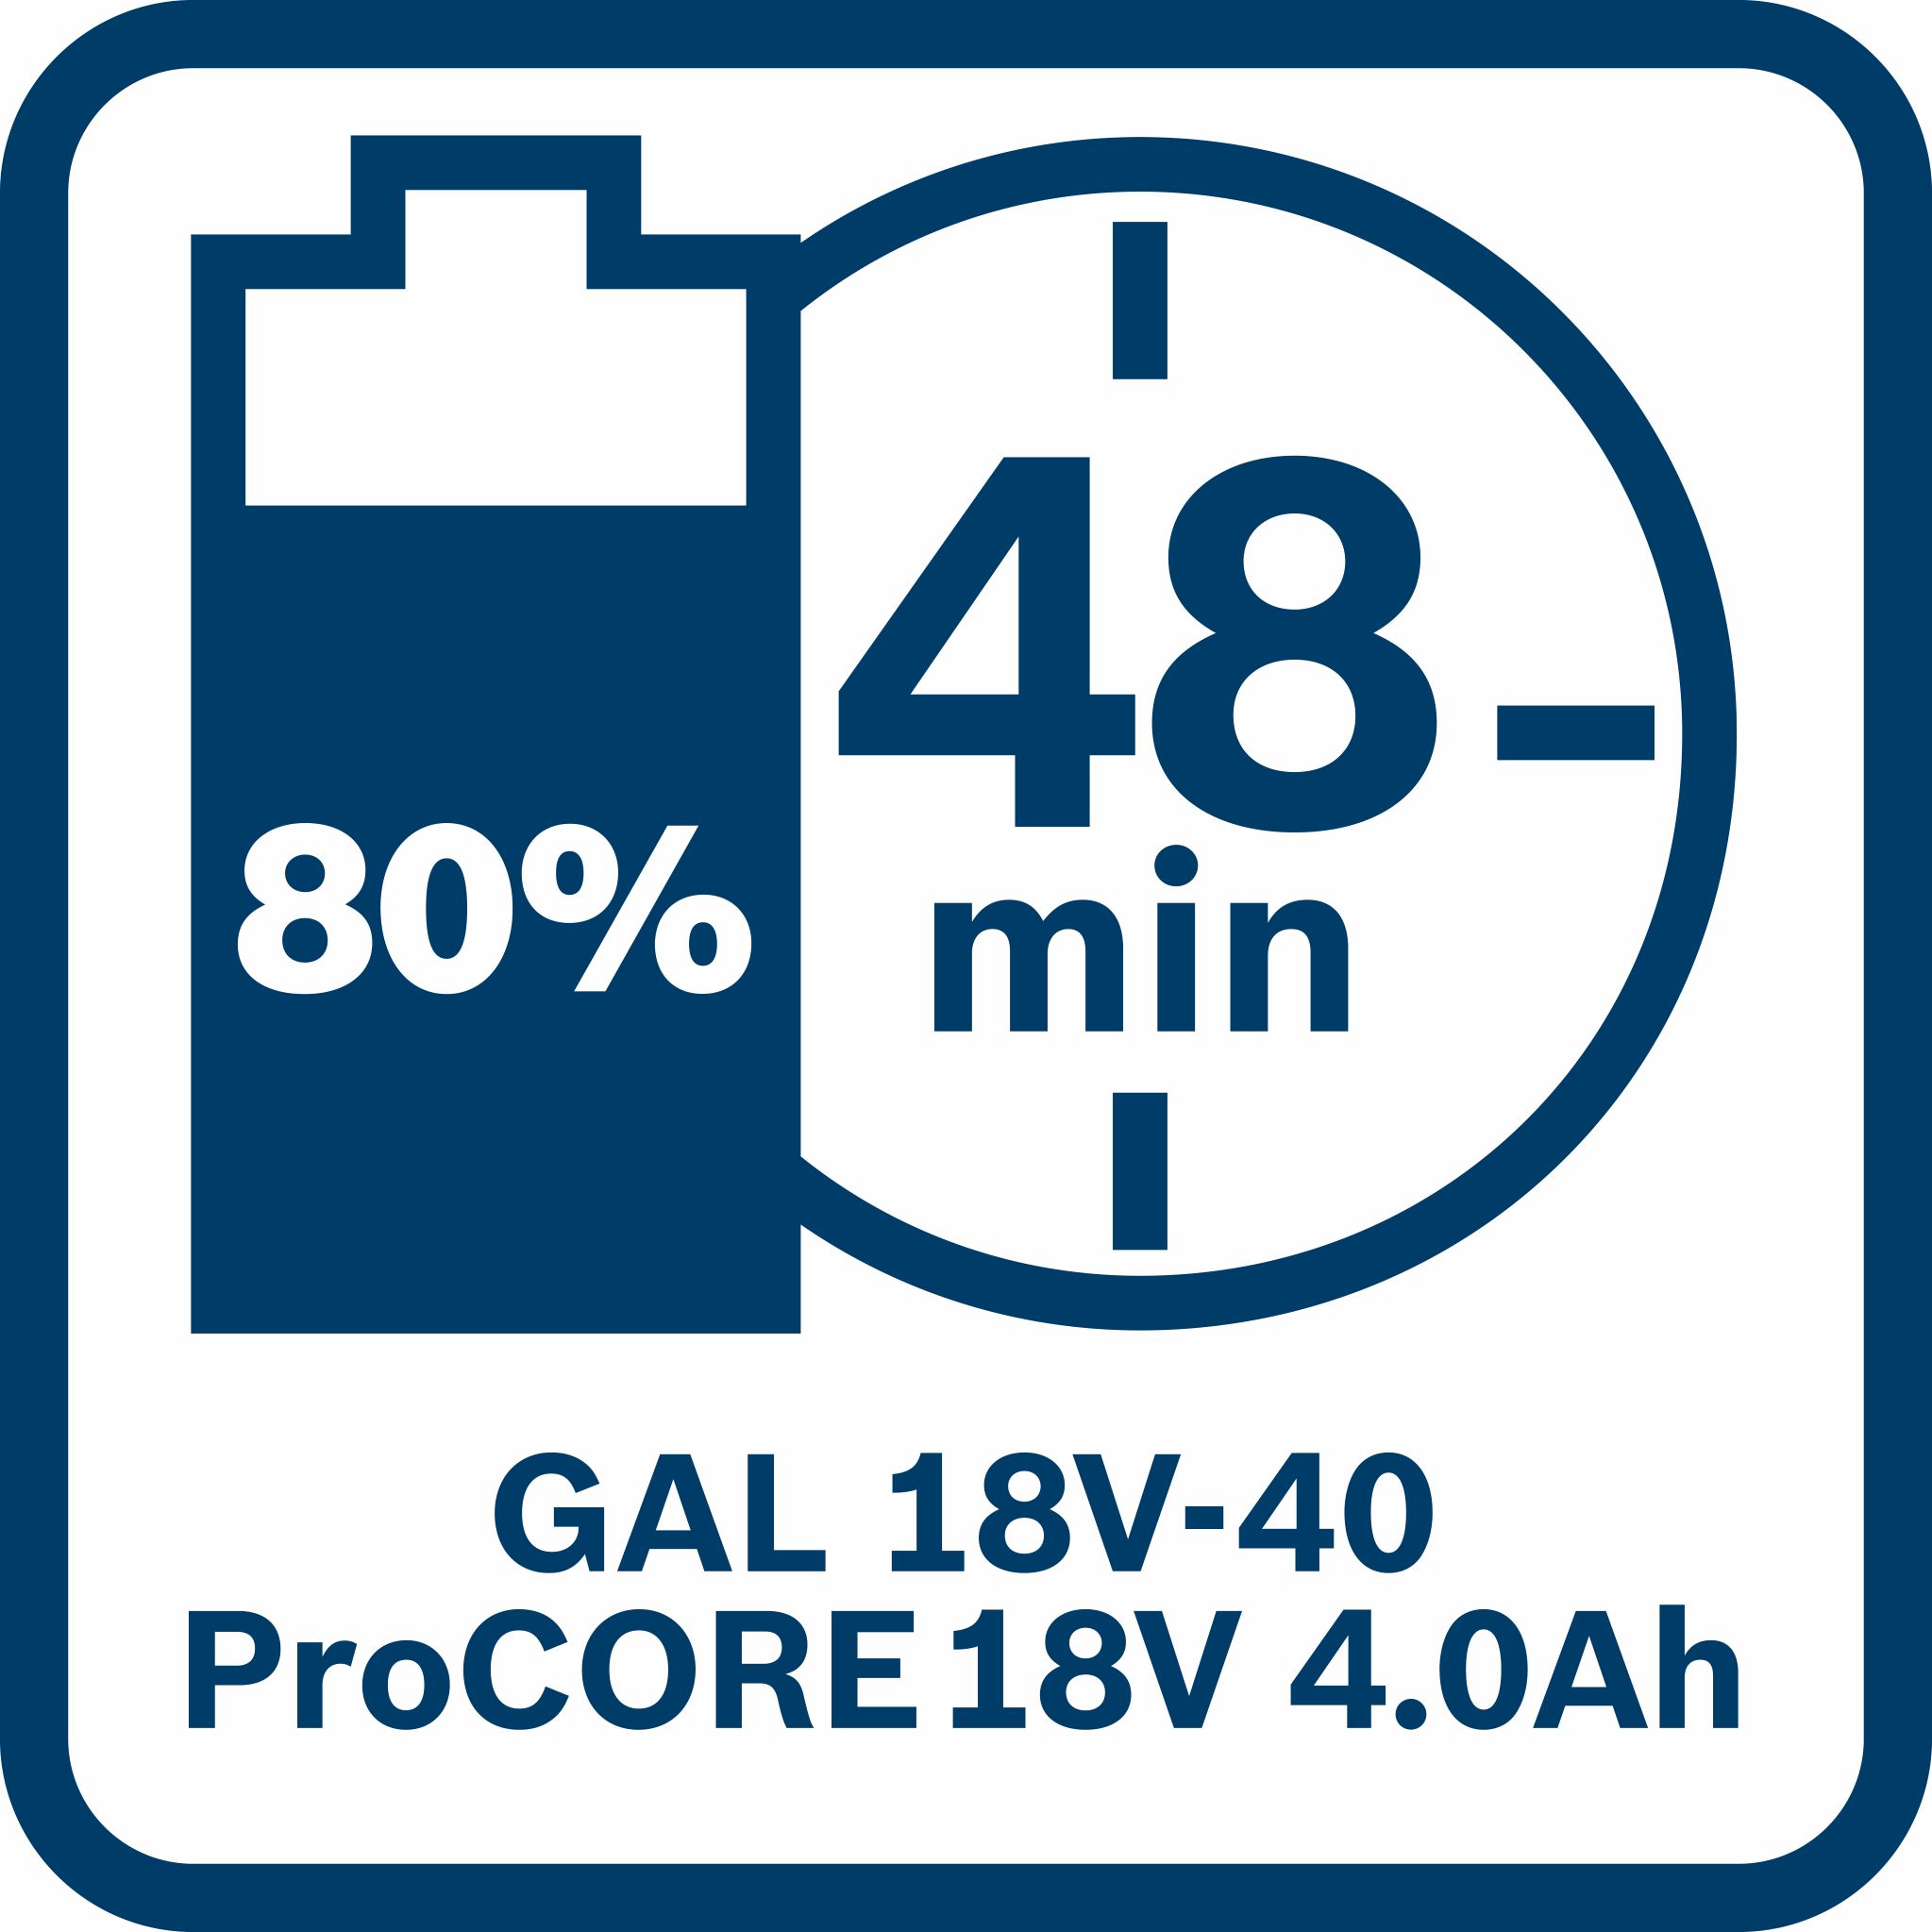 Σετ Φορτιστή GAL 18V-40 και 1 Μπαταρία Procore 18V 4.0Ah Bosch - 3